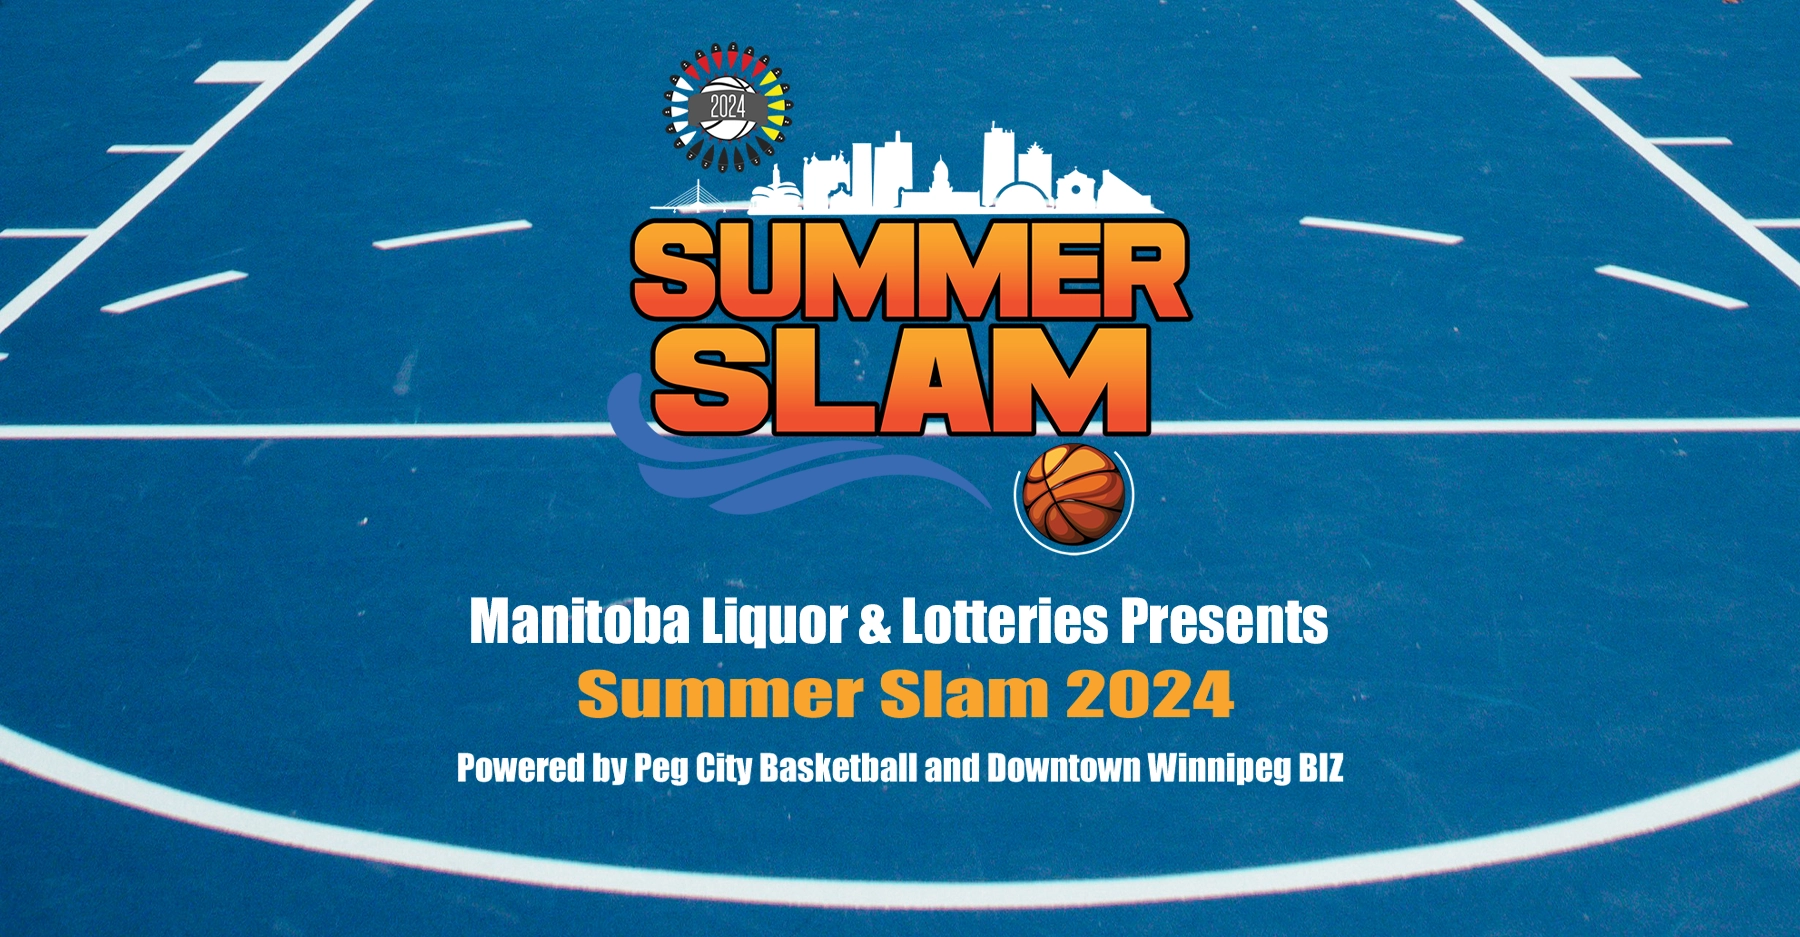 Summer Slam 2024 Basketball logo on blue basketball court background